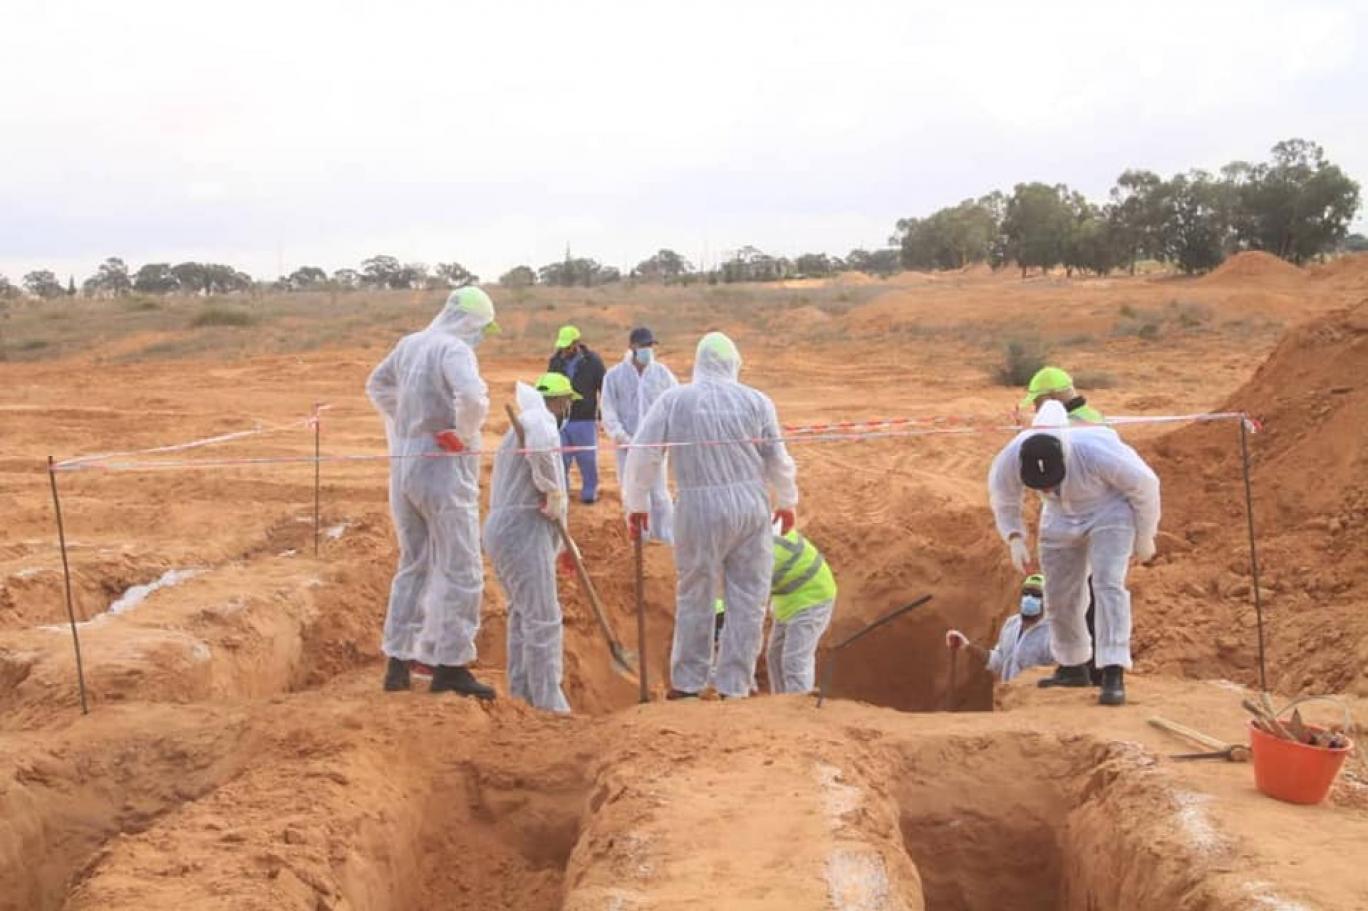 Sudan’da toplu mezar bulundu: 87 kişinin cansız bedenine ulaşıldı